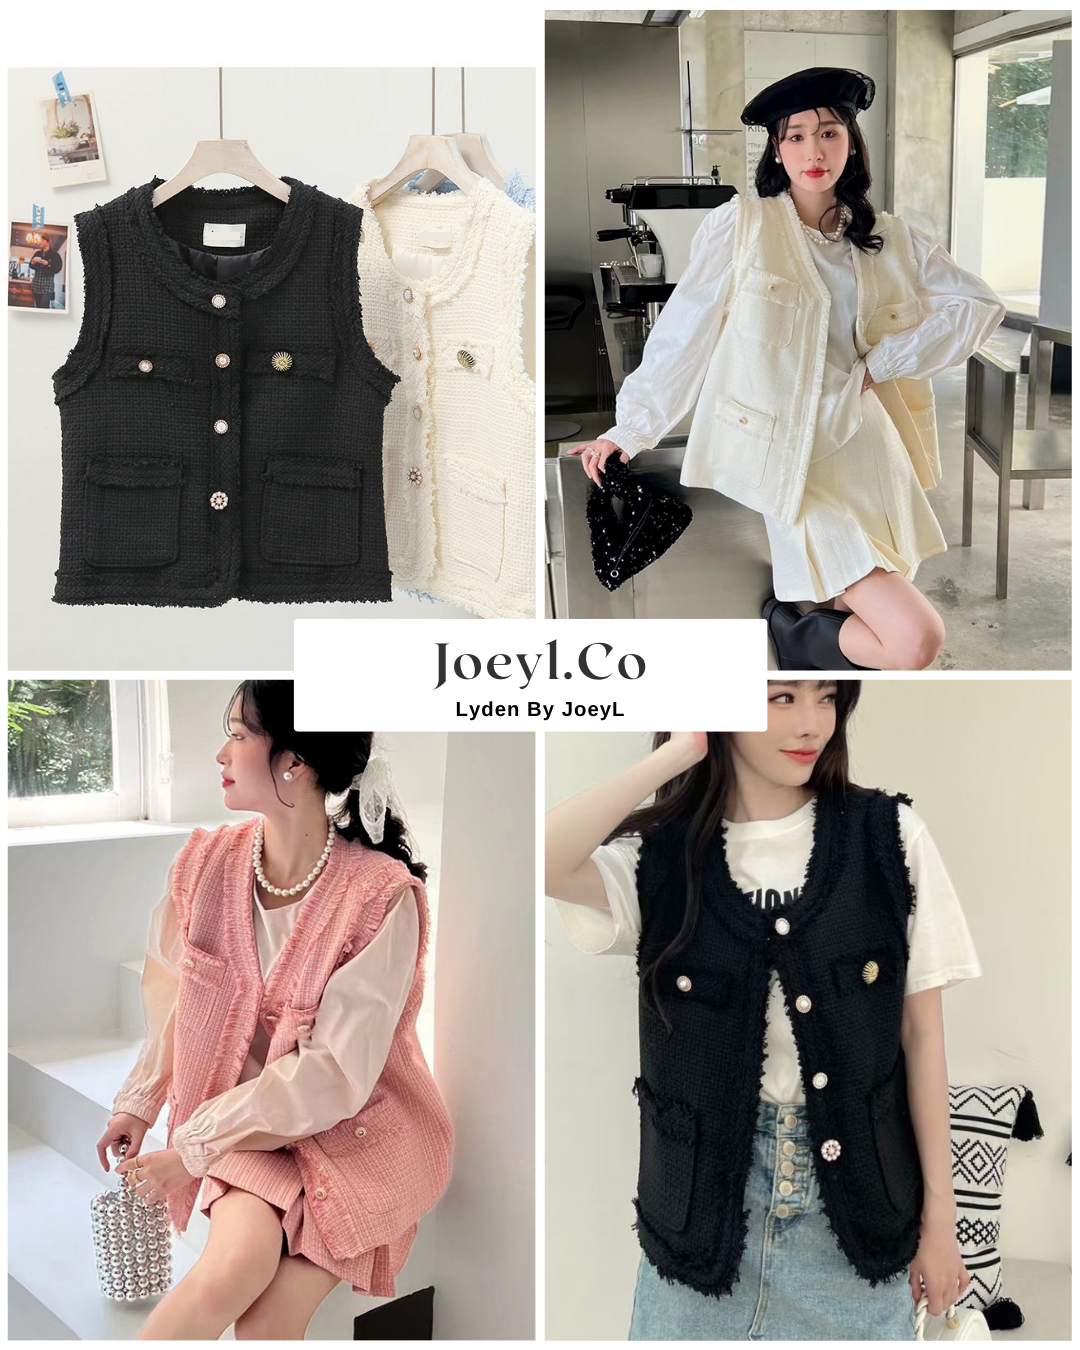 Joeyl.Co-Ladies tweed outerwear & blouse